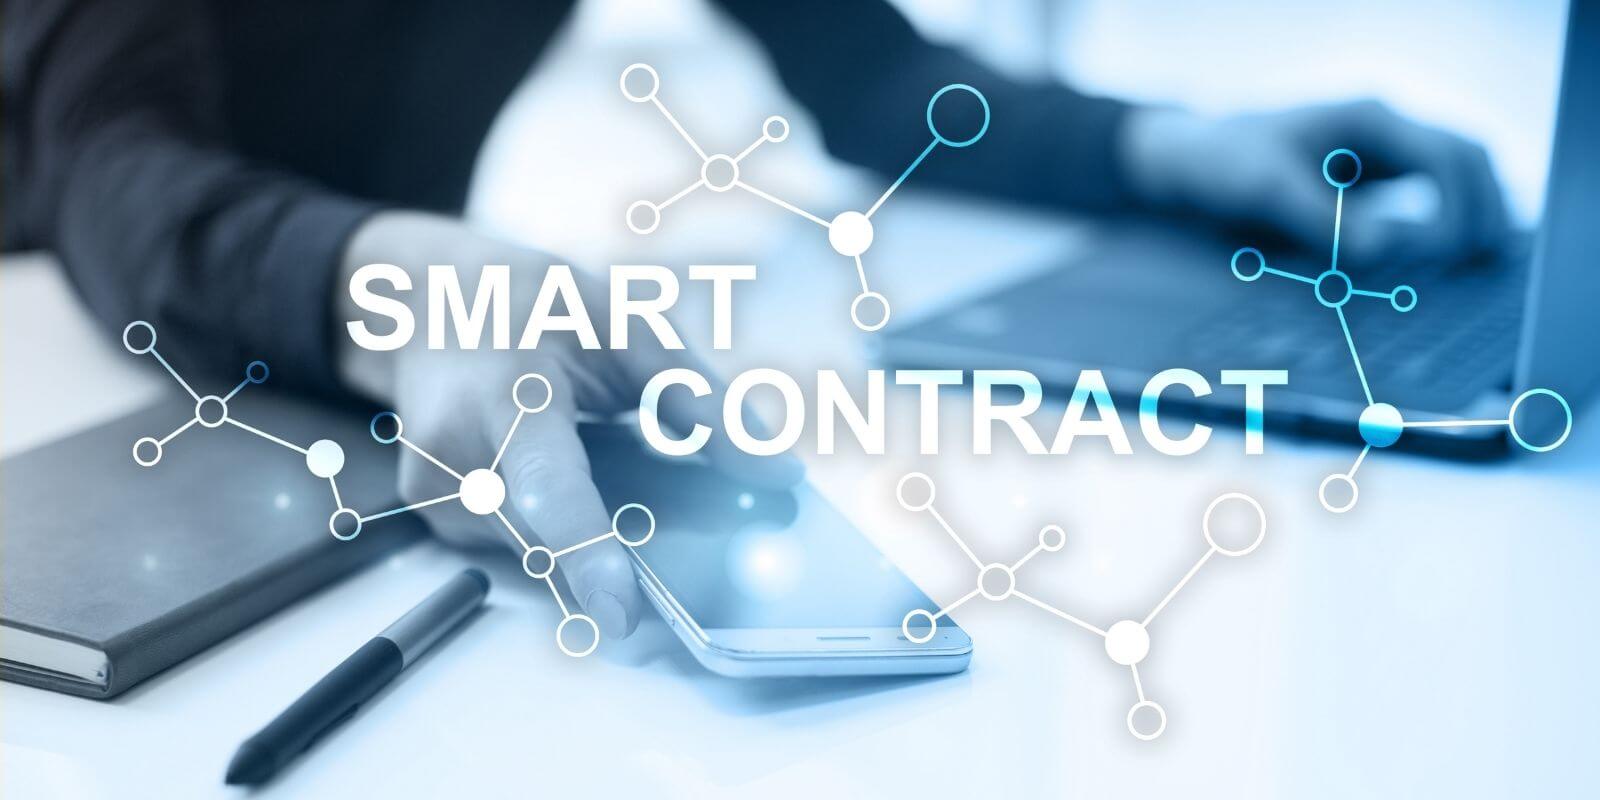 15% des ETH sont verrouillés dans des smart contracts